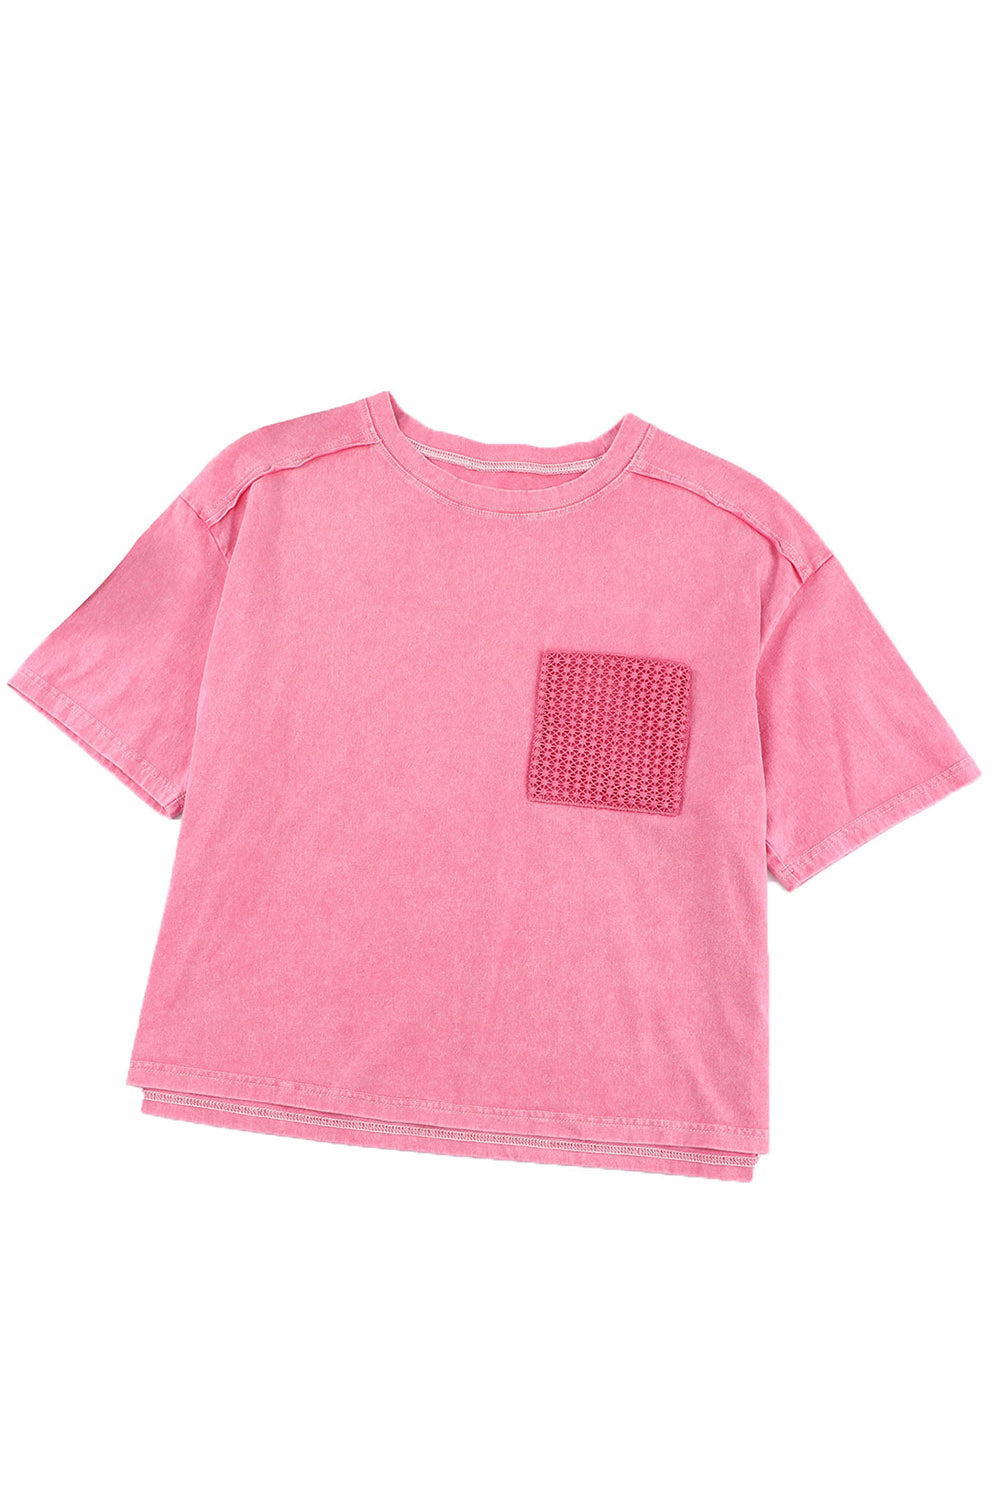 T-shirt rose à poche plaquée et dentelle délavée à l'acide